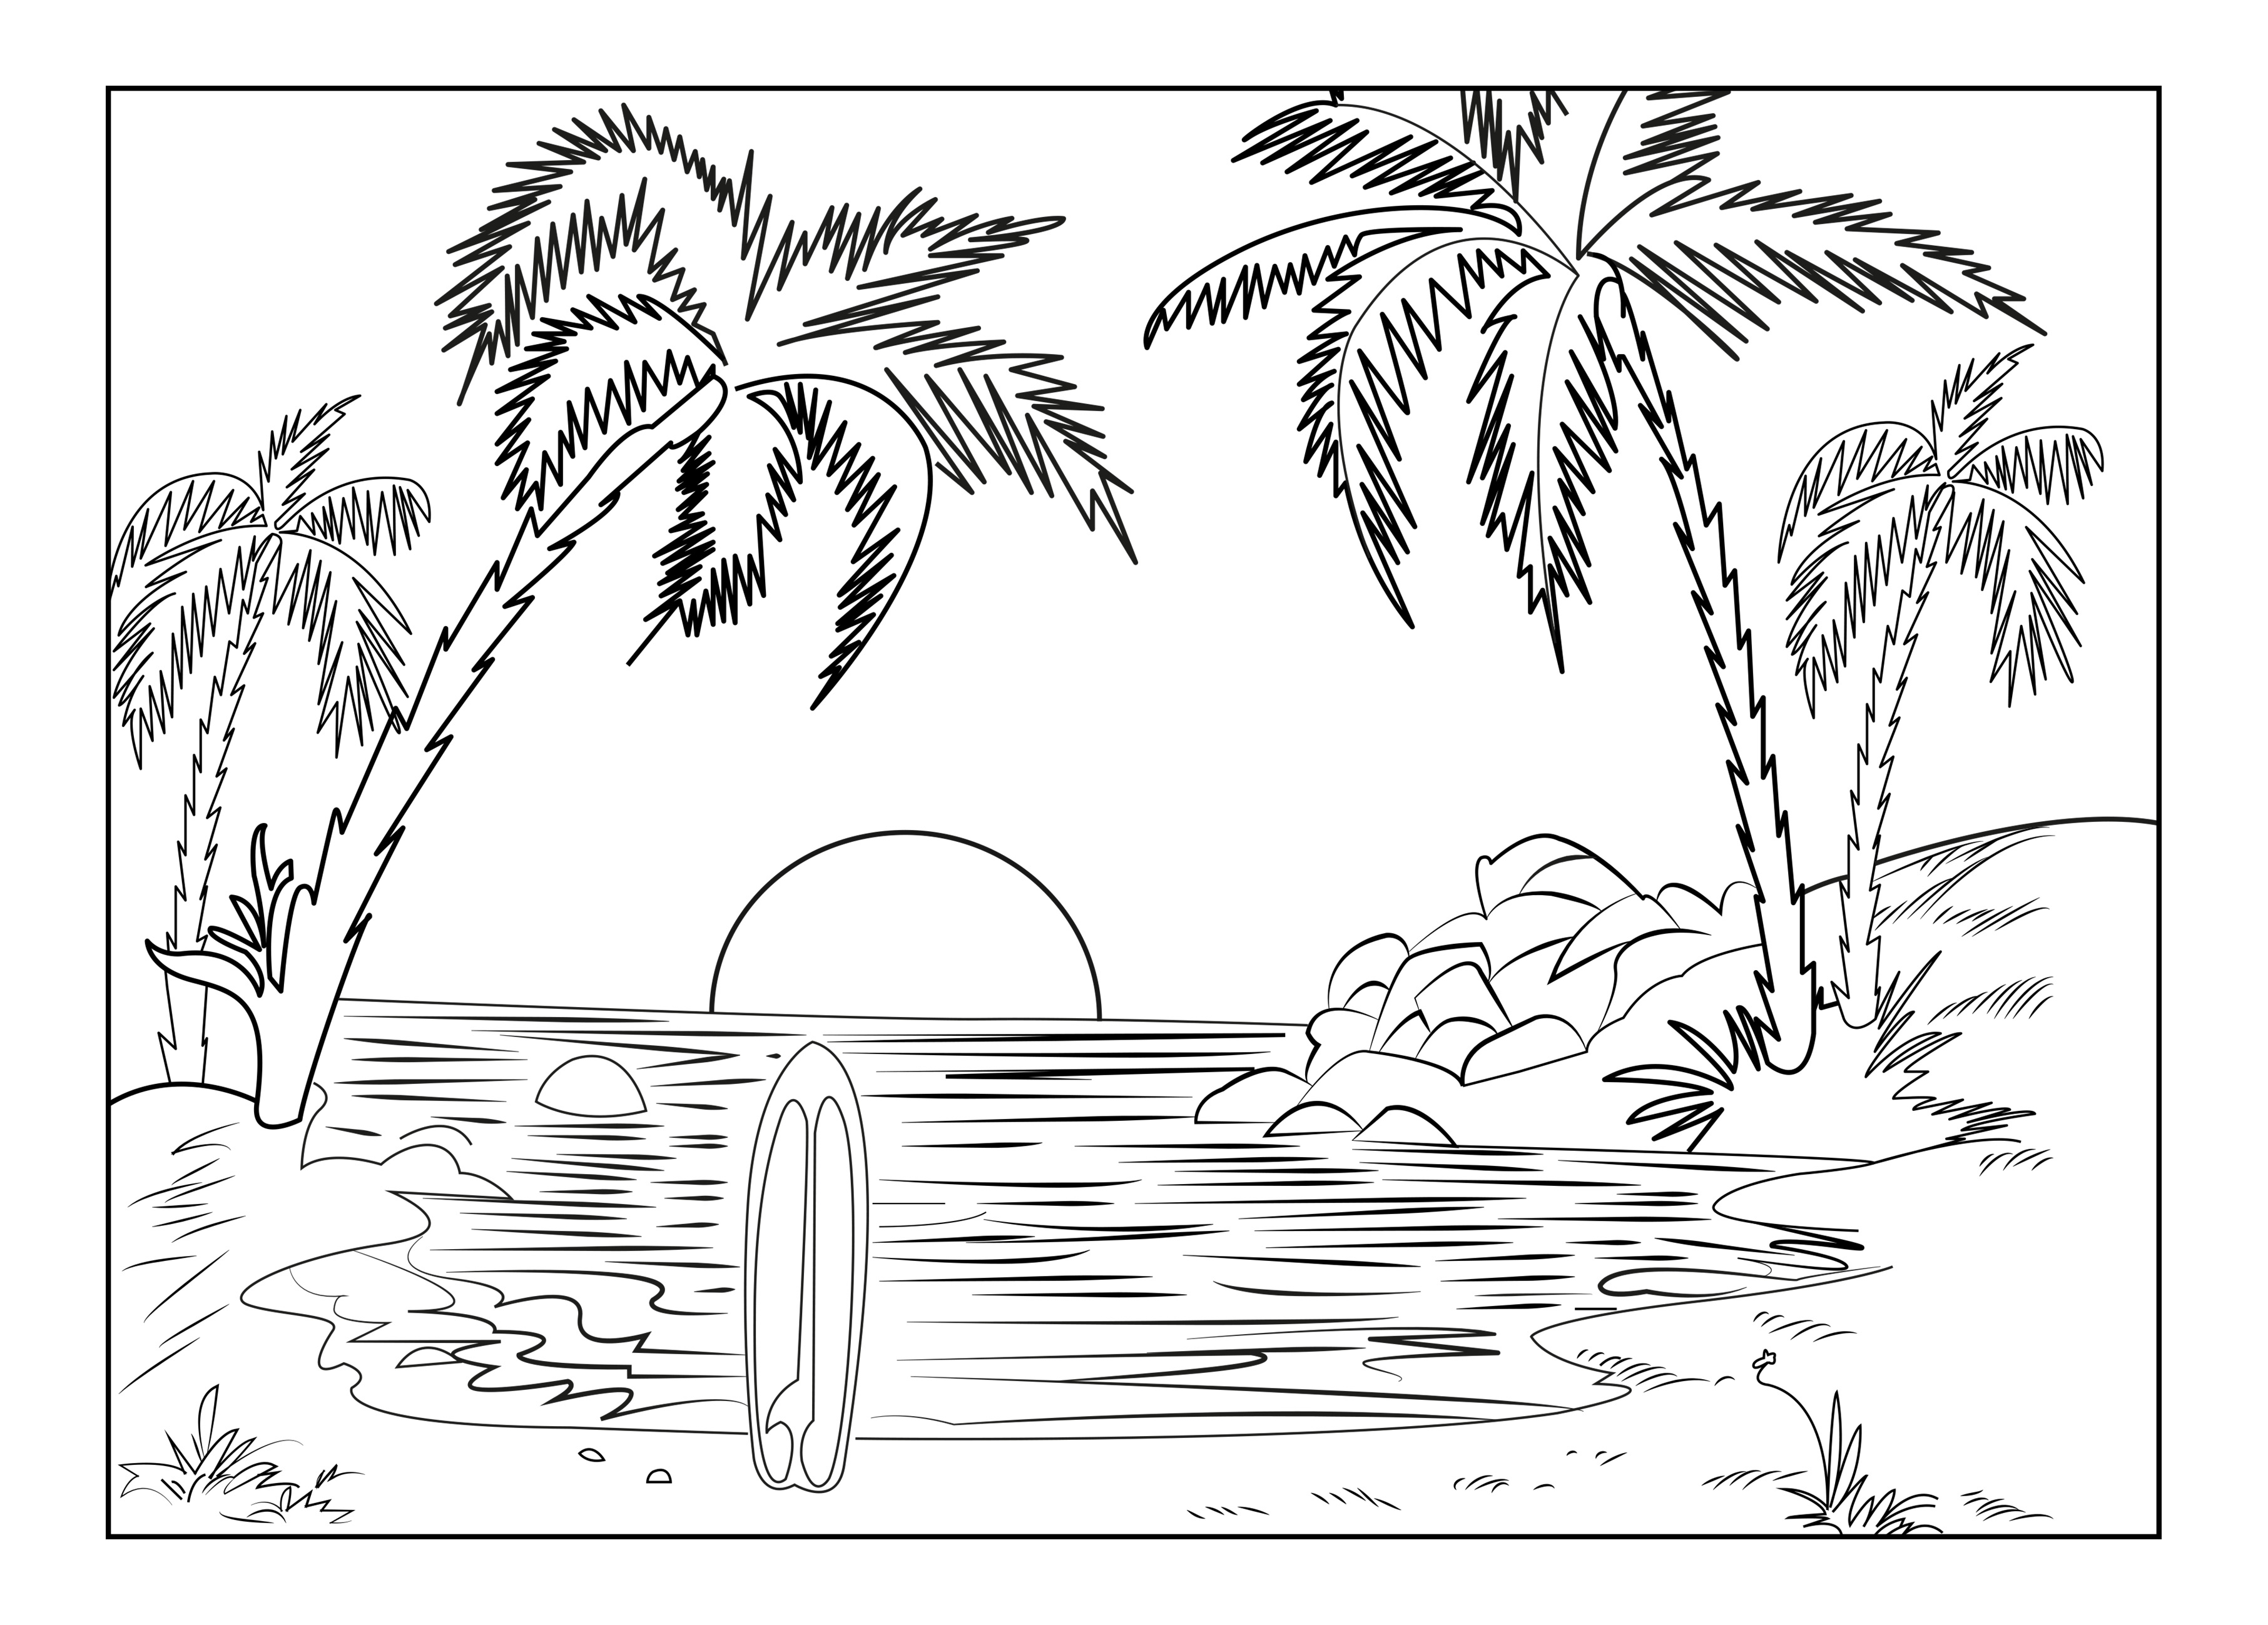 La spiaggia di un'isola paradisiaca, con palme, una tavola da surf e il sole al tramonto